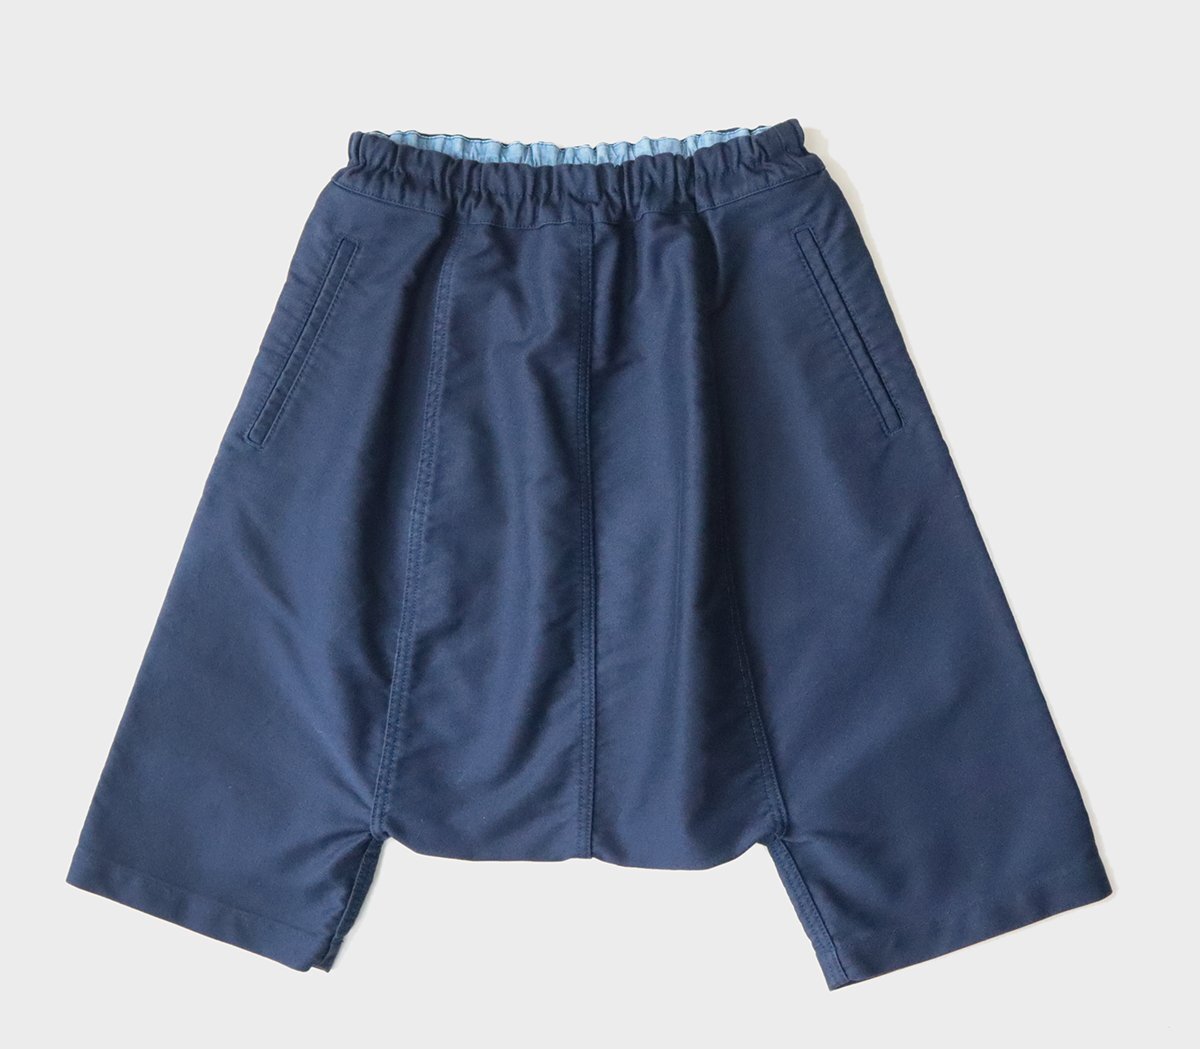 COMME des GARCONS COMME des GARCONS × BLEU DE PANAME * deformation sarouel pants navy blue S shorts com com blue du panama m*133/DF13